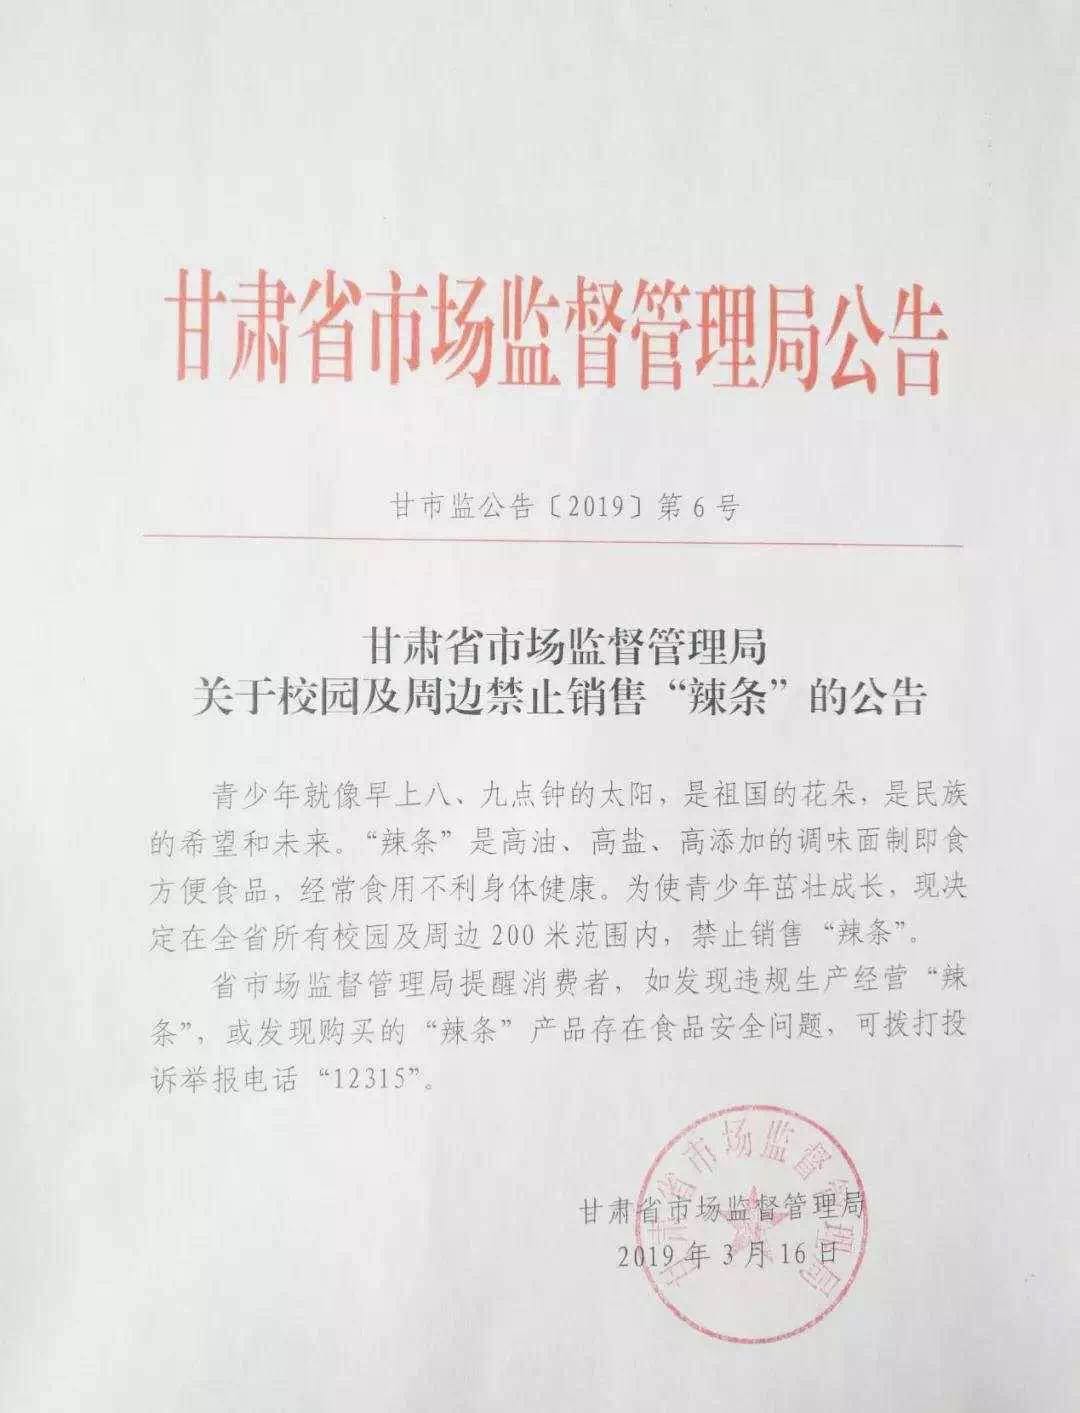 3月16日，甘肃省市场监督管理局发布了关于校园及周边禁止销售“辣条”的公告